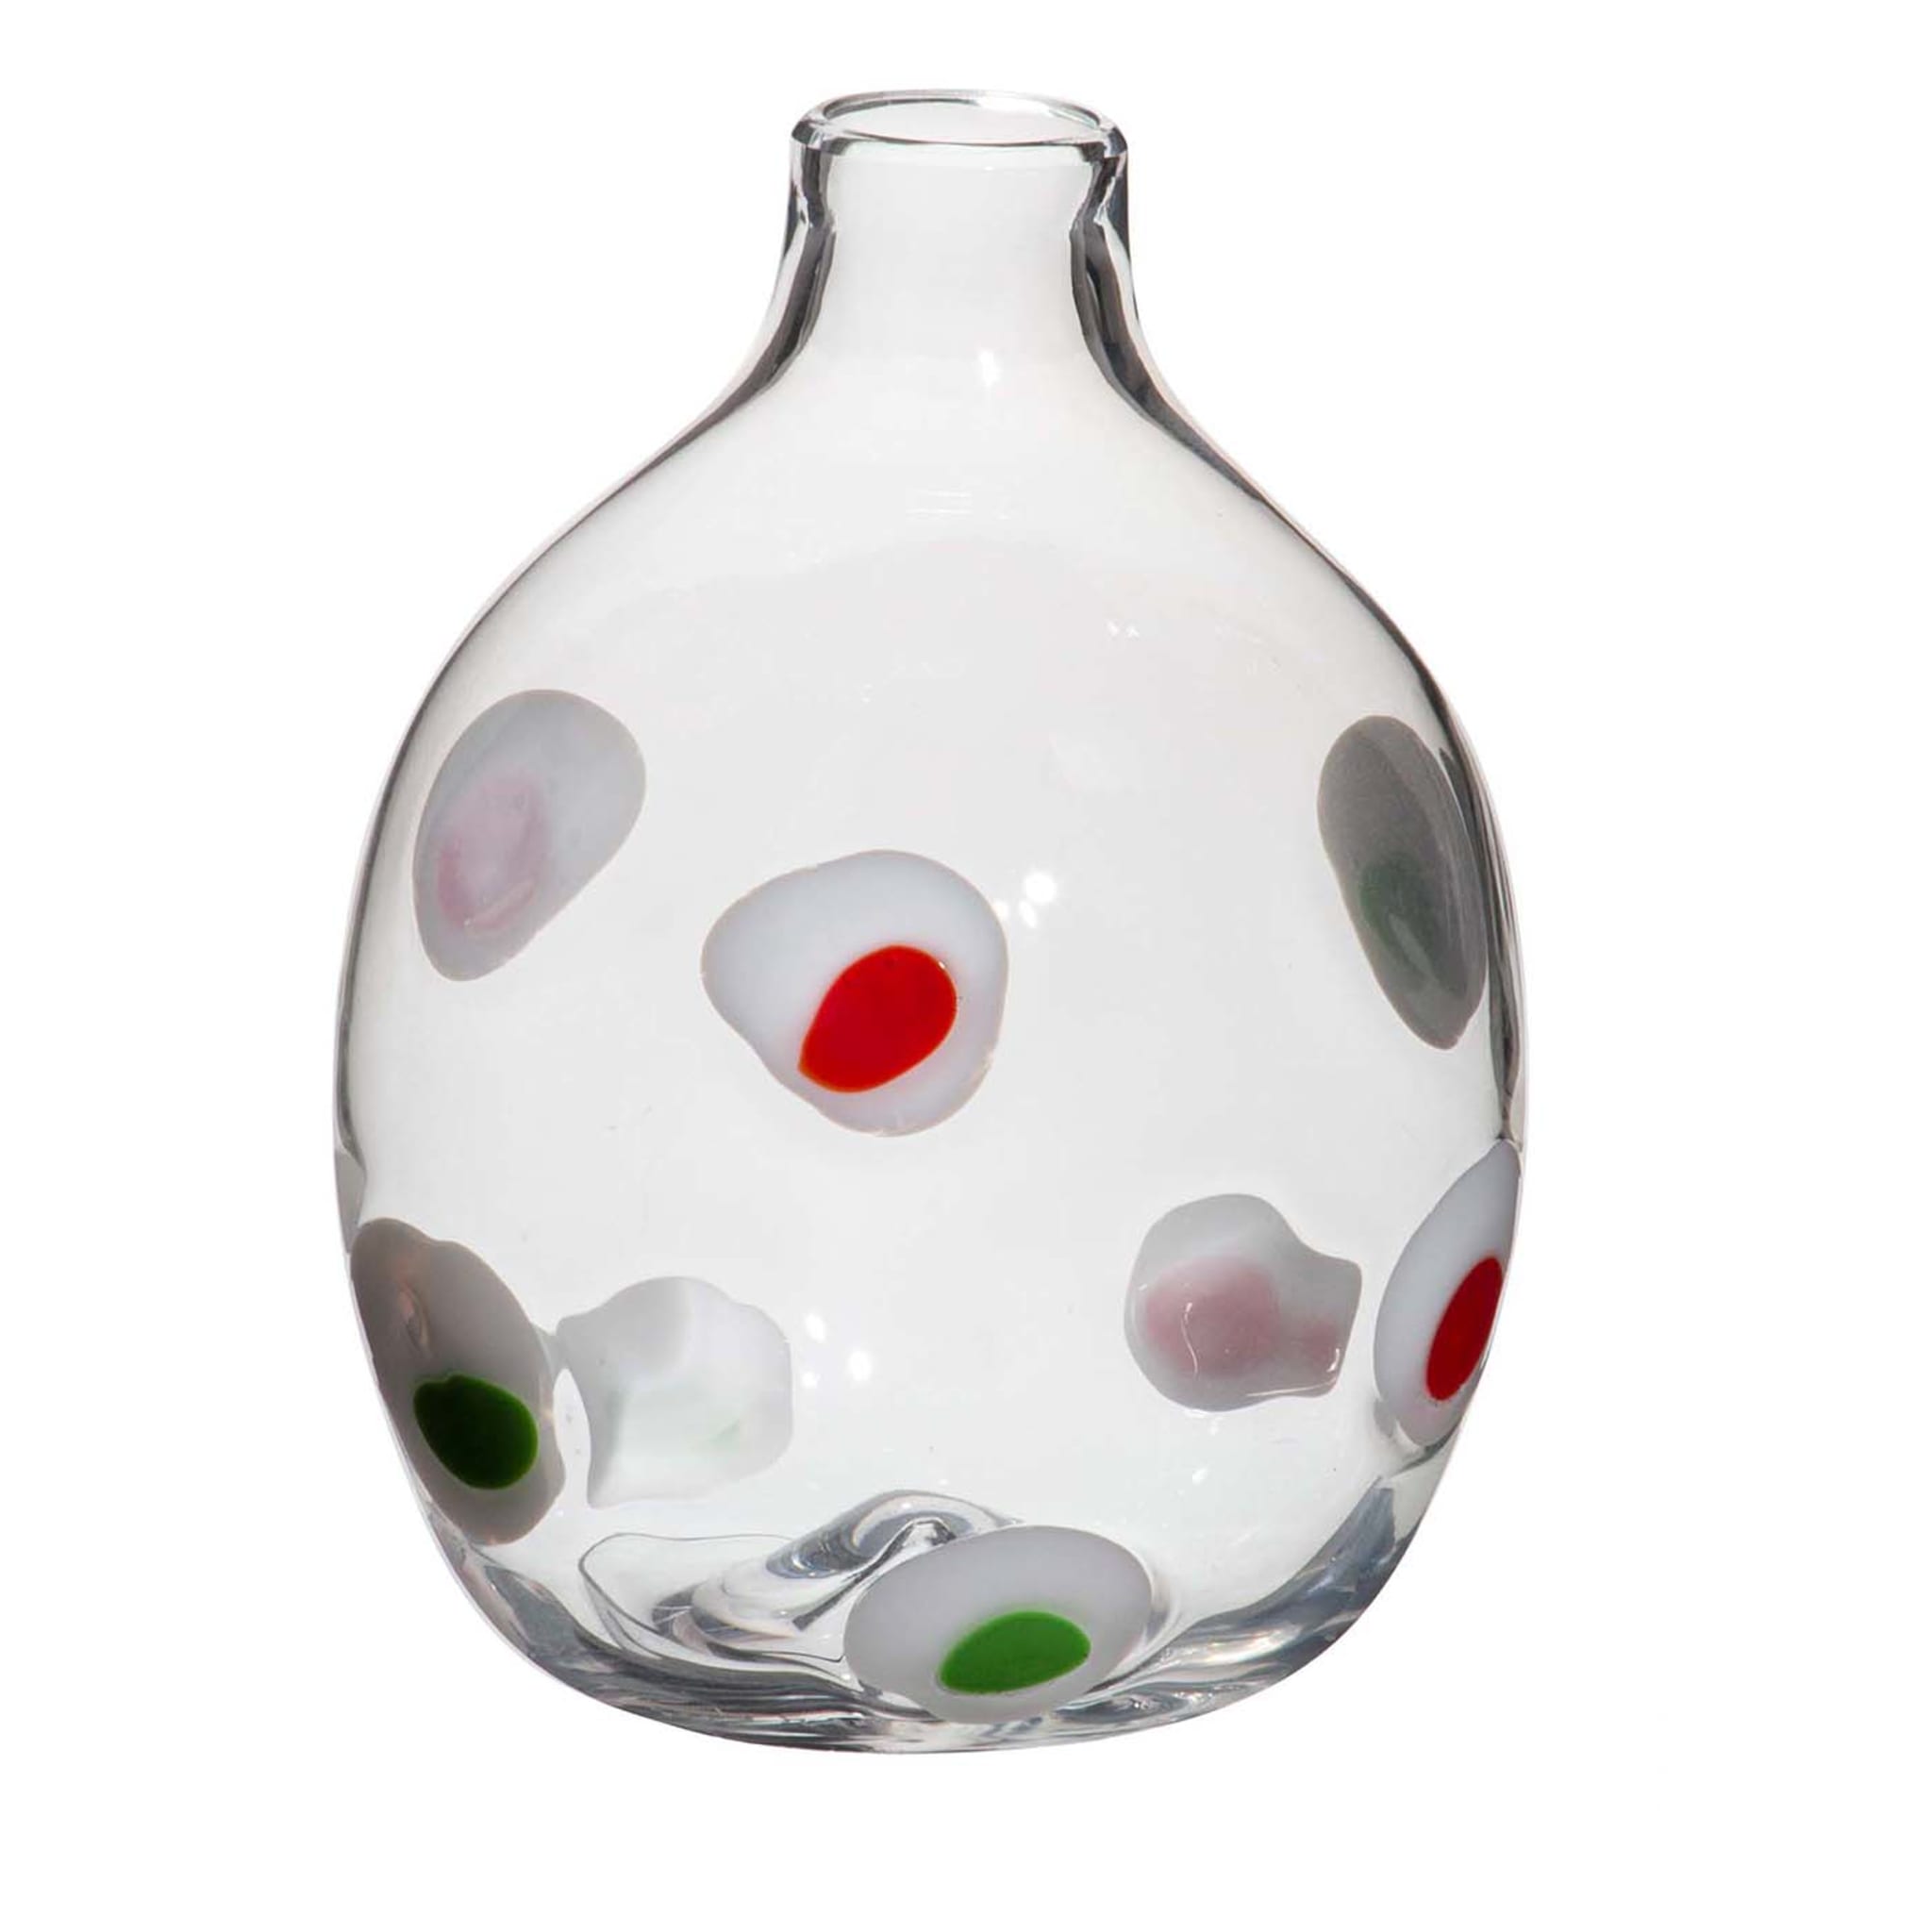 Einblütige Vase Weiß/Rot/Grün gepunktet von Carlo Moretti - Hauptansicht